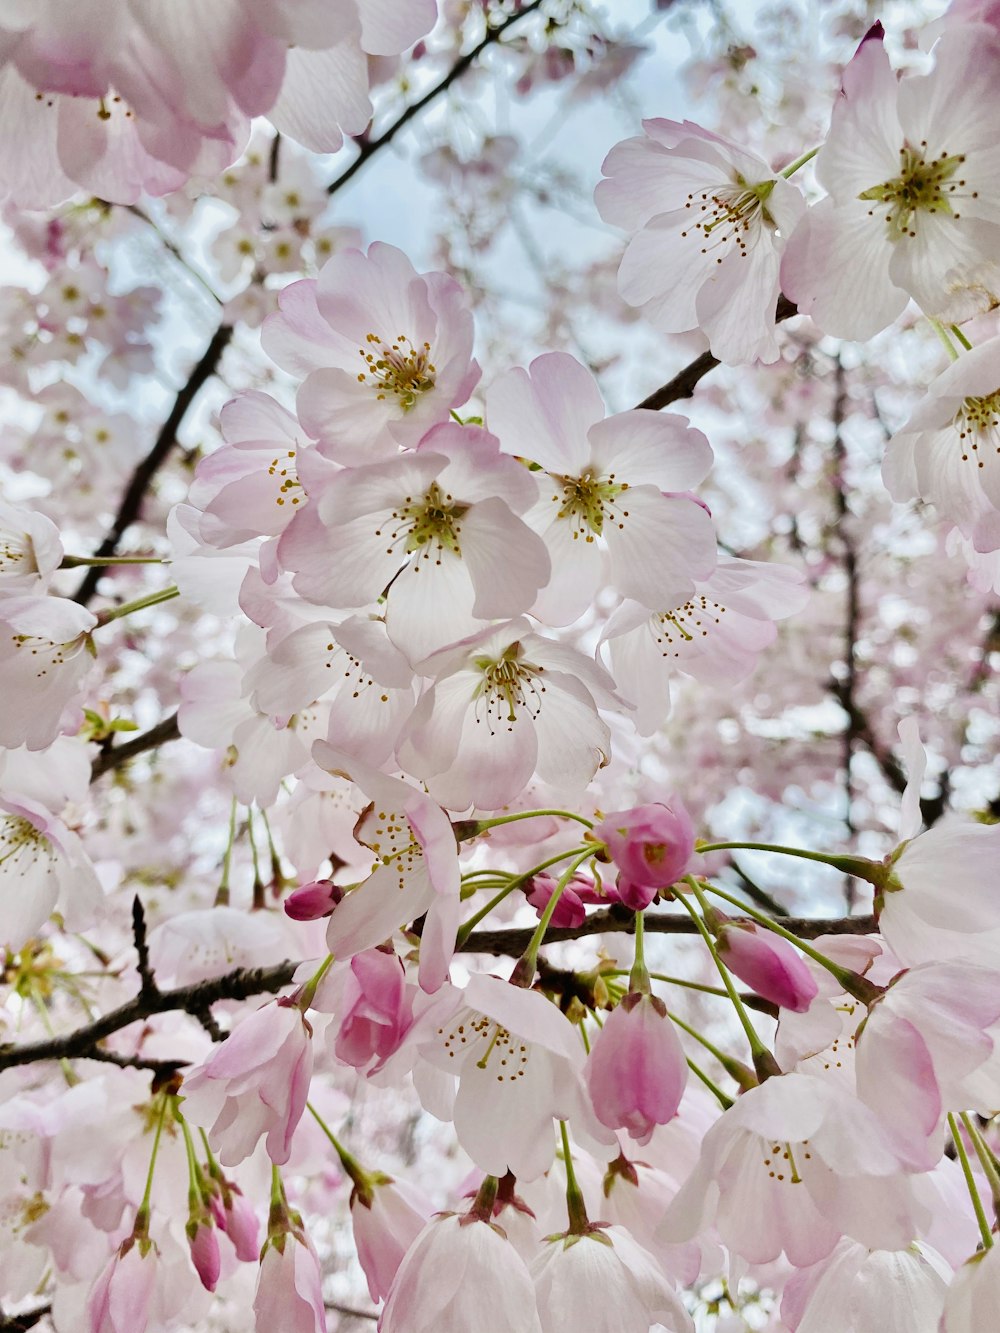 fiori di ciliegio bianchi e rosa in fiore durante il giorno